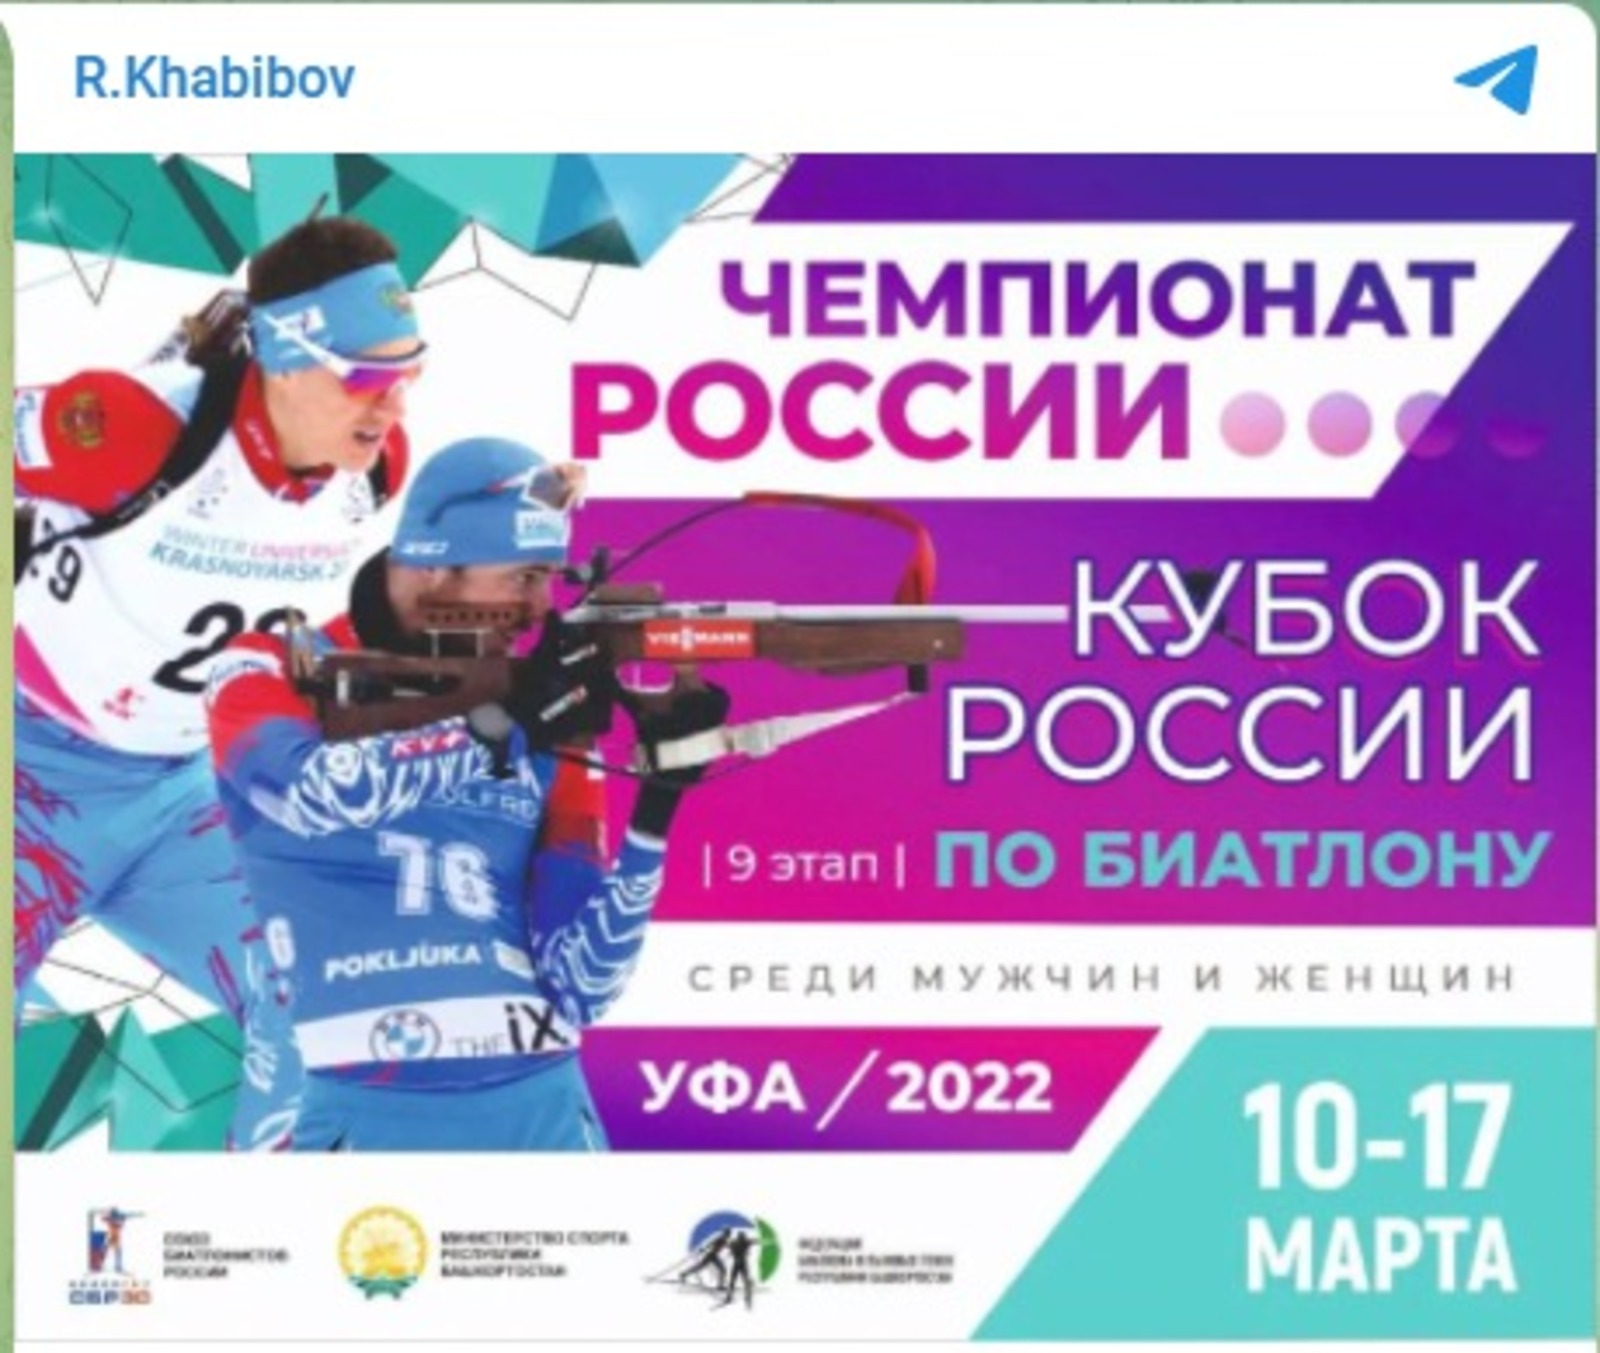 Өфөлә - биатлон буйынса Рәсәй чемпионаты